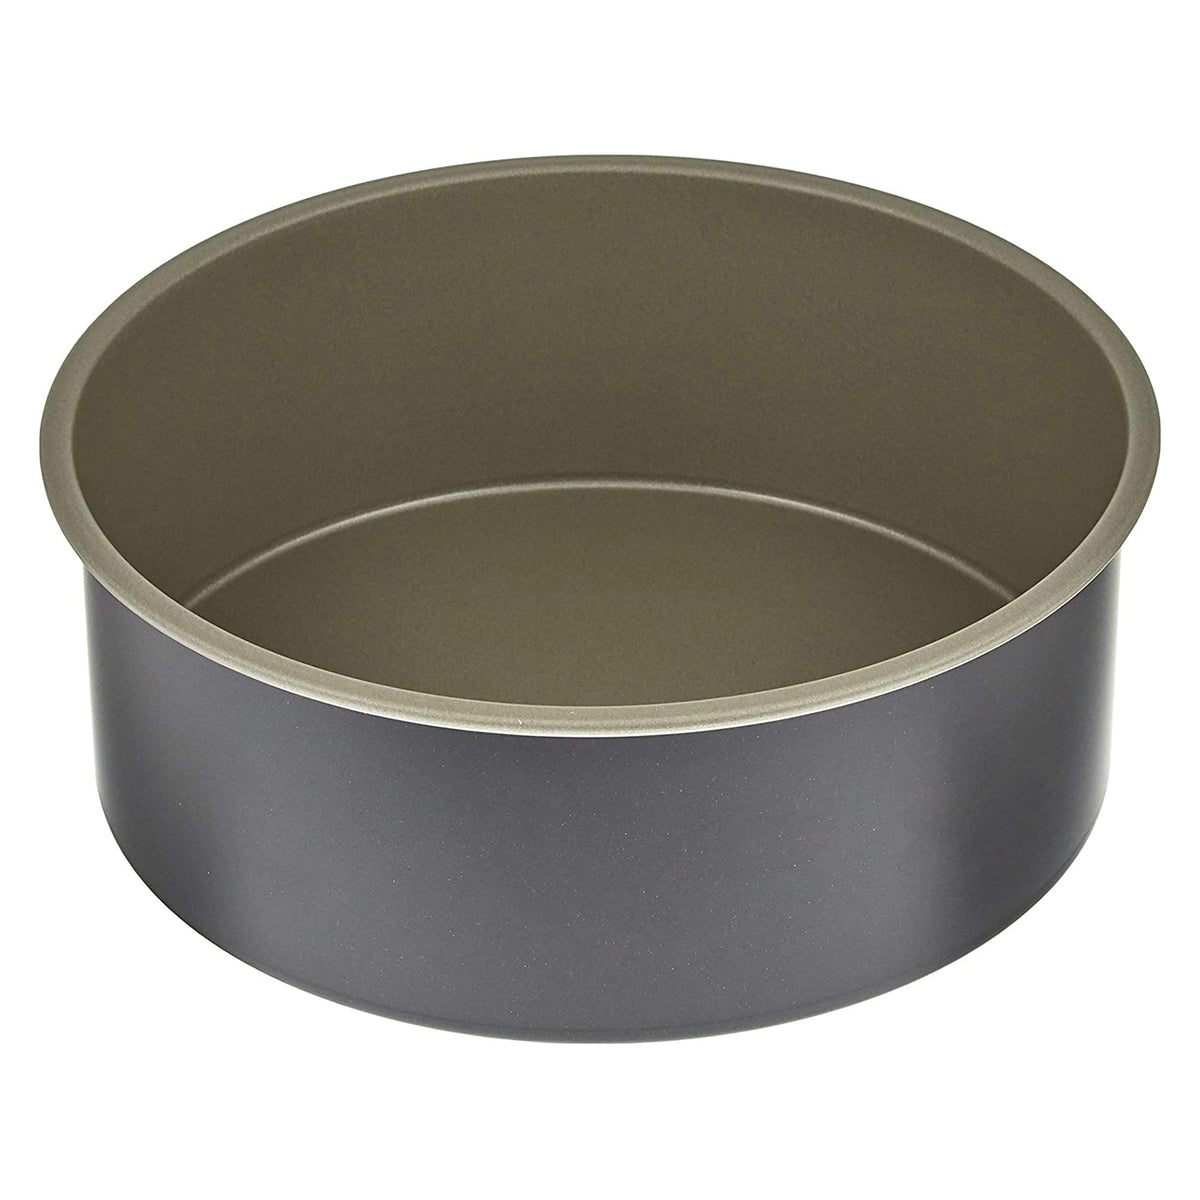 SHIMOTORI Tin Plate Round Cake Pan